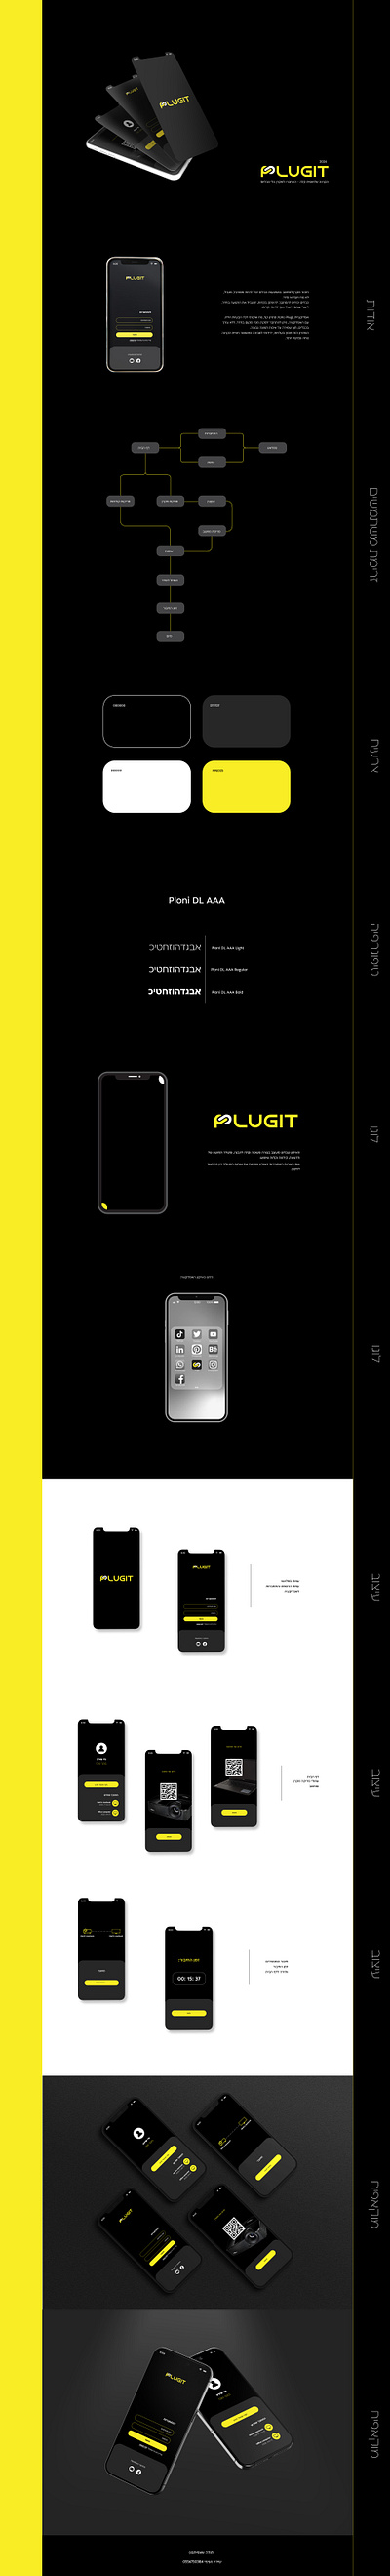 אפליקציה plugit branding design graphic design logo typography ui ux